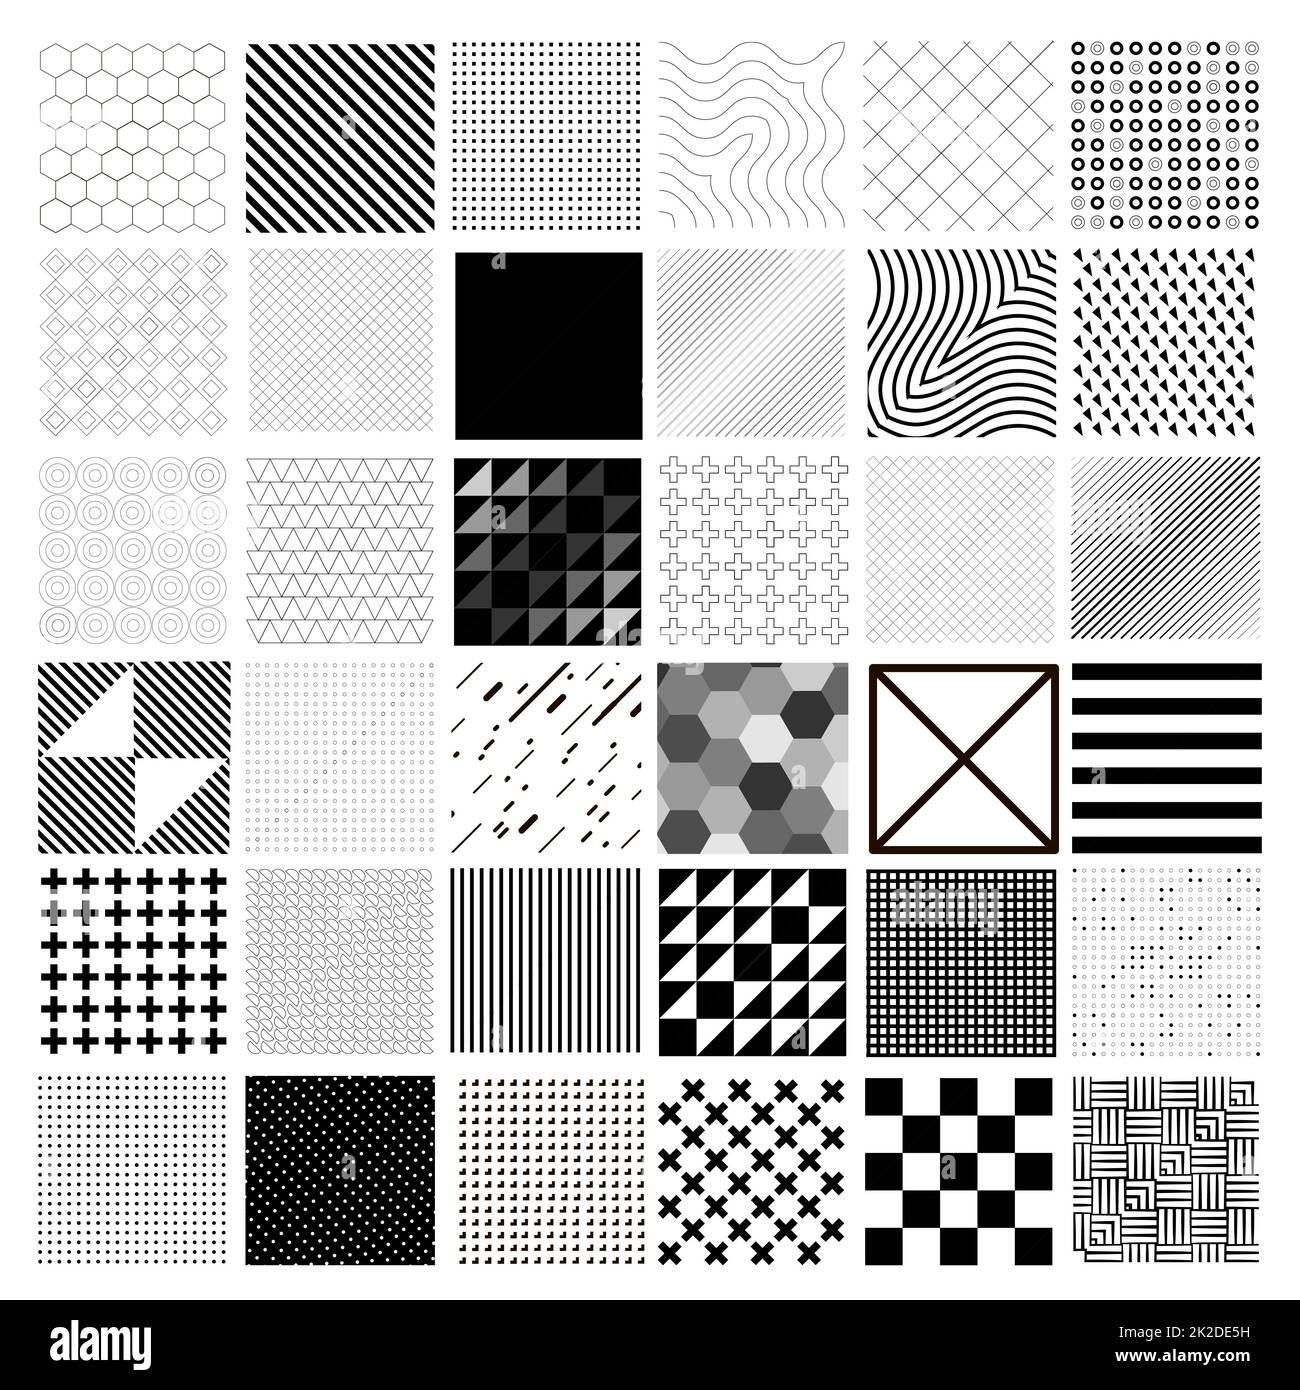 36 carrés différents avec des motifs différents - vecteur Banque D'Images